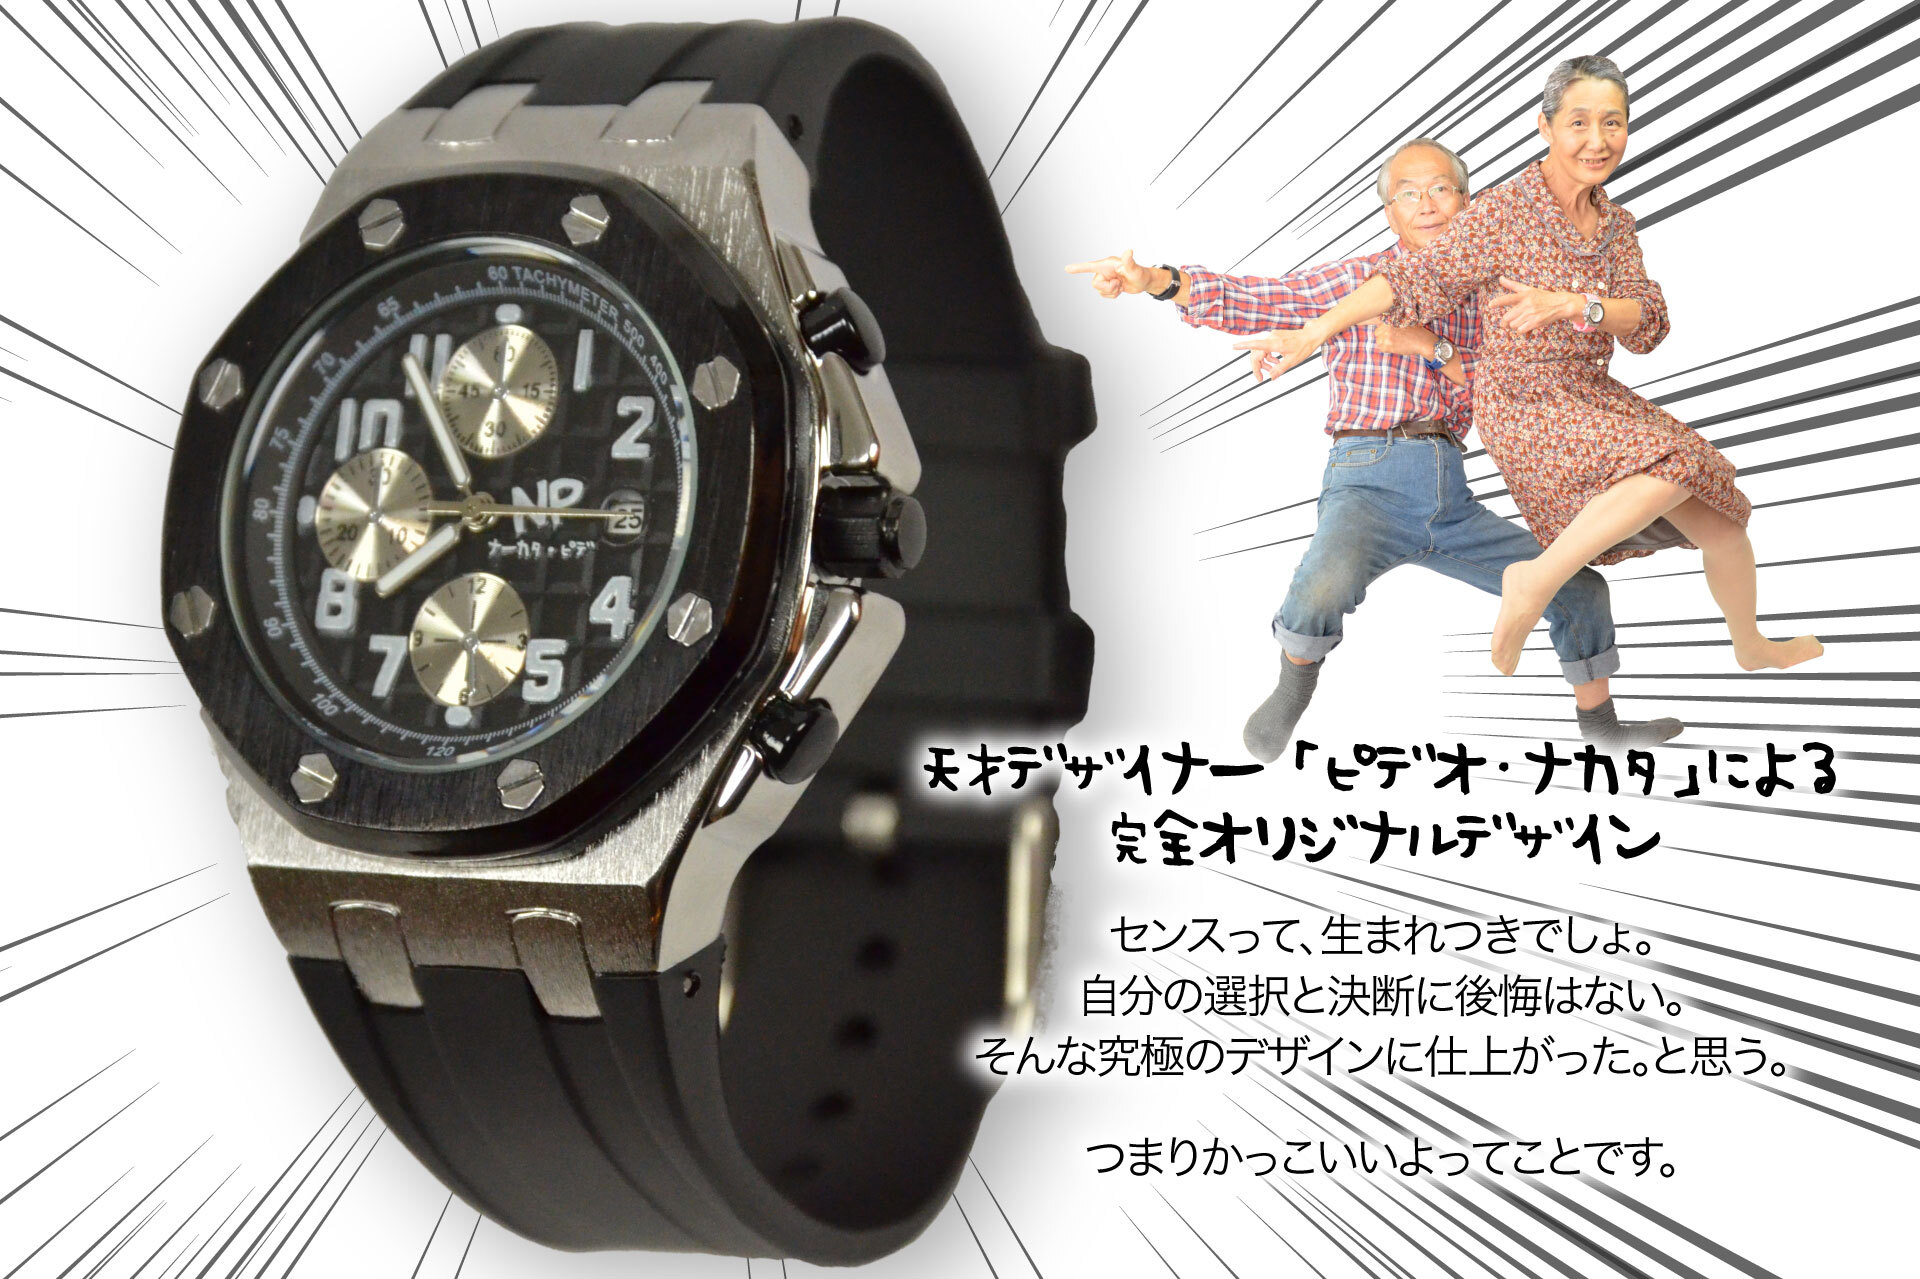 世界初！ナカタさん専用腕時計 初回限定1,000本のジョーク腕時計 